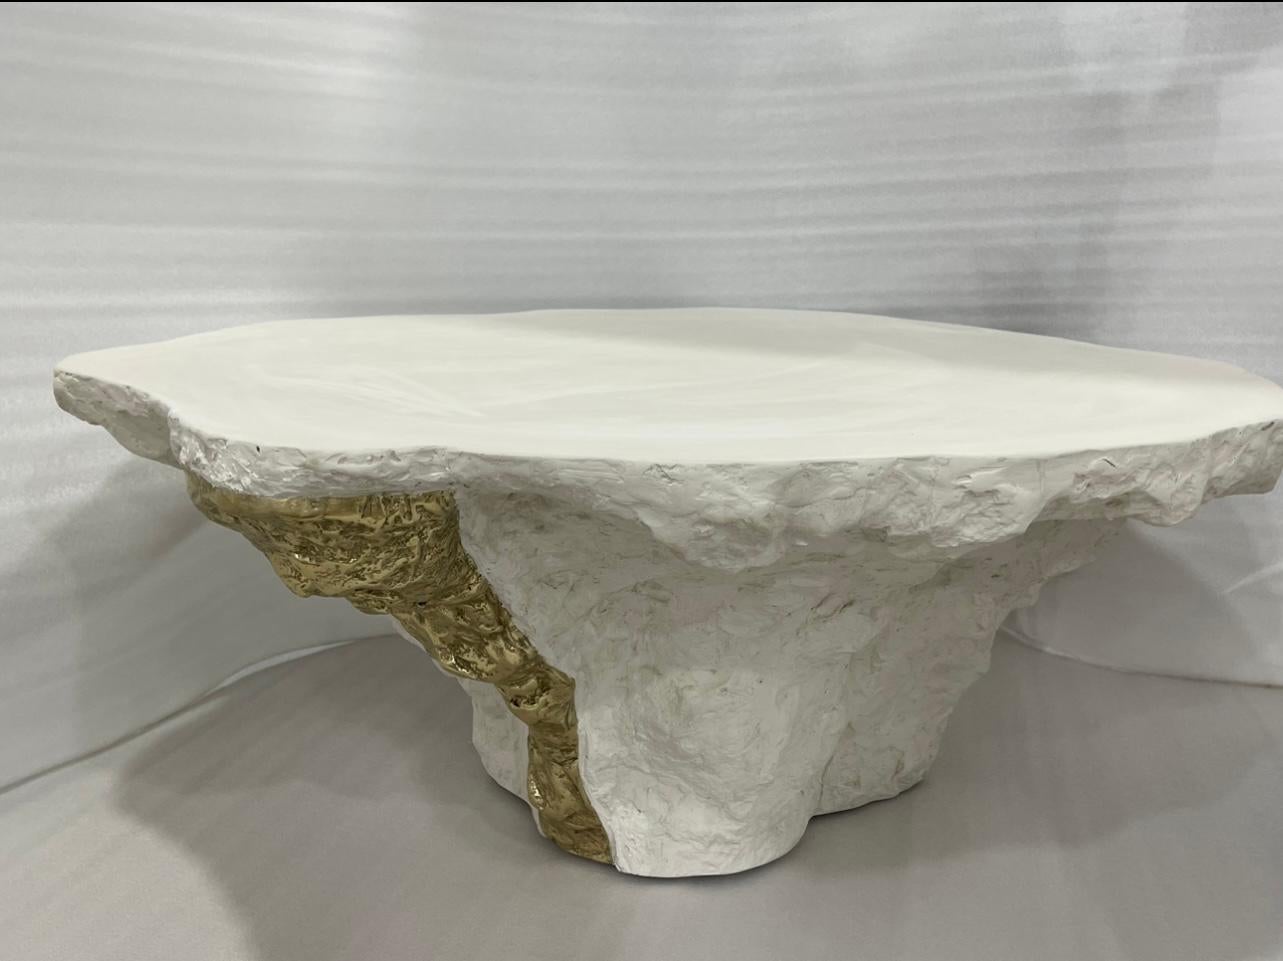 Der skulpturale Roccia Gelerio-Mitteltisch von RIZO verkörpert mit seiner einzigartigen Form, Textur und MATERIALität zeitgenössisches Design mit künstlerischem Flair. Die starke, aber organische Form, die aus gemischten Materialien geschnitzt ist,